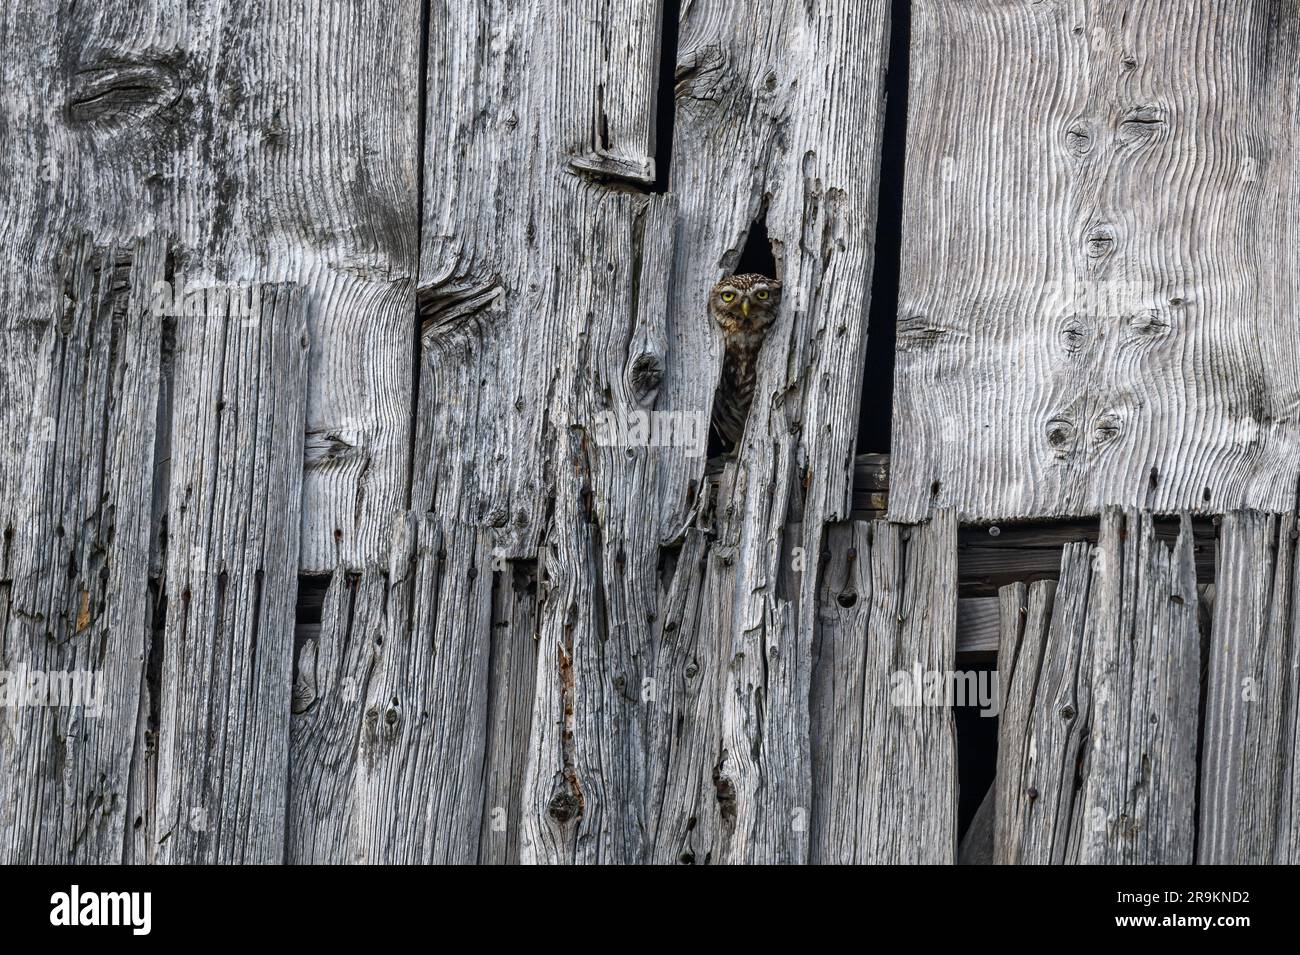 Little Owl (Athene noctua) dans une grange donnant sur. Bas-Rhin, Collectivite europeenne d'Alsace, Grand est, France. Banque D'Images